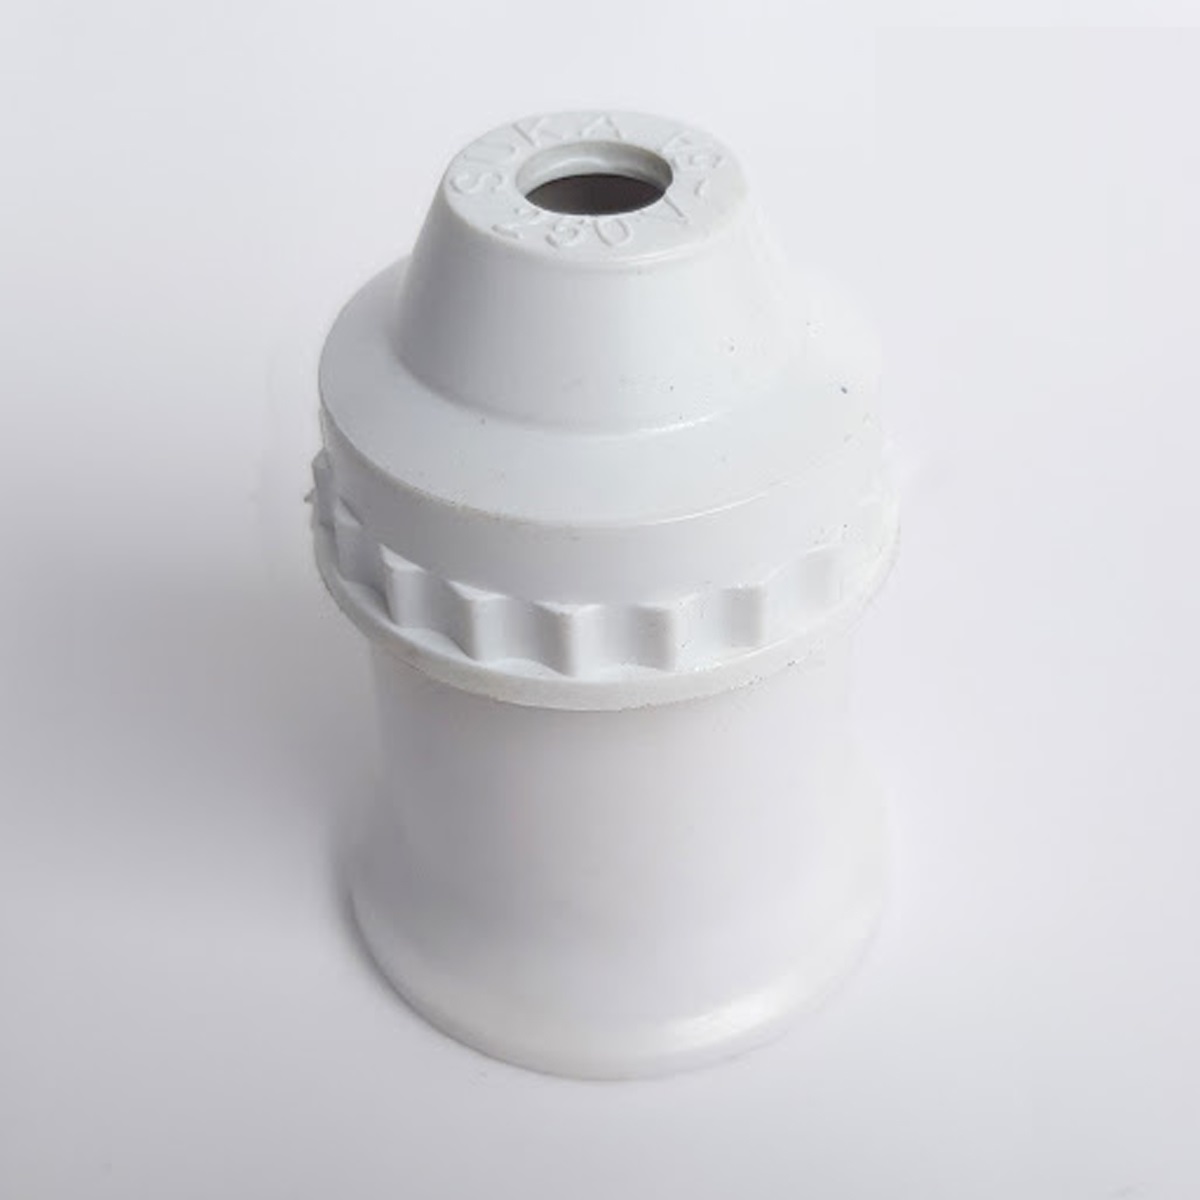 Đui đèn E27 cách điện ( Đui sứ, đui thường , đui đèn chống nước ), an toàn khi sử dụng cao cấp